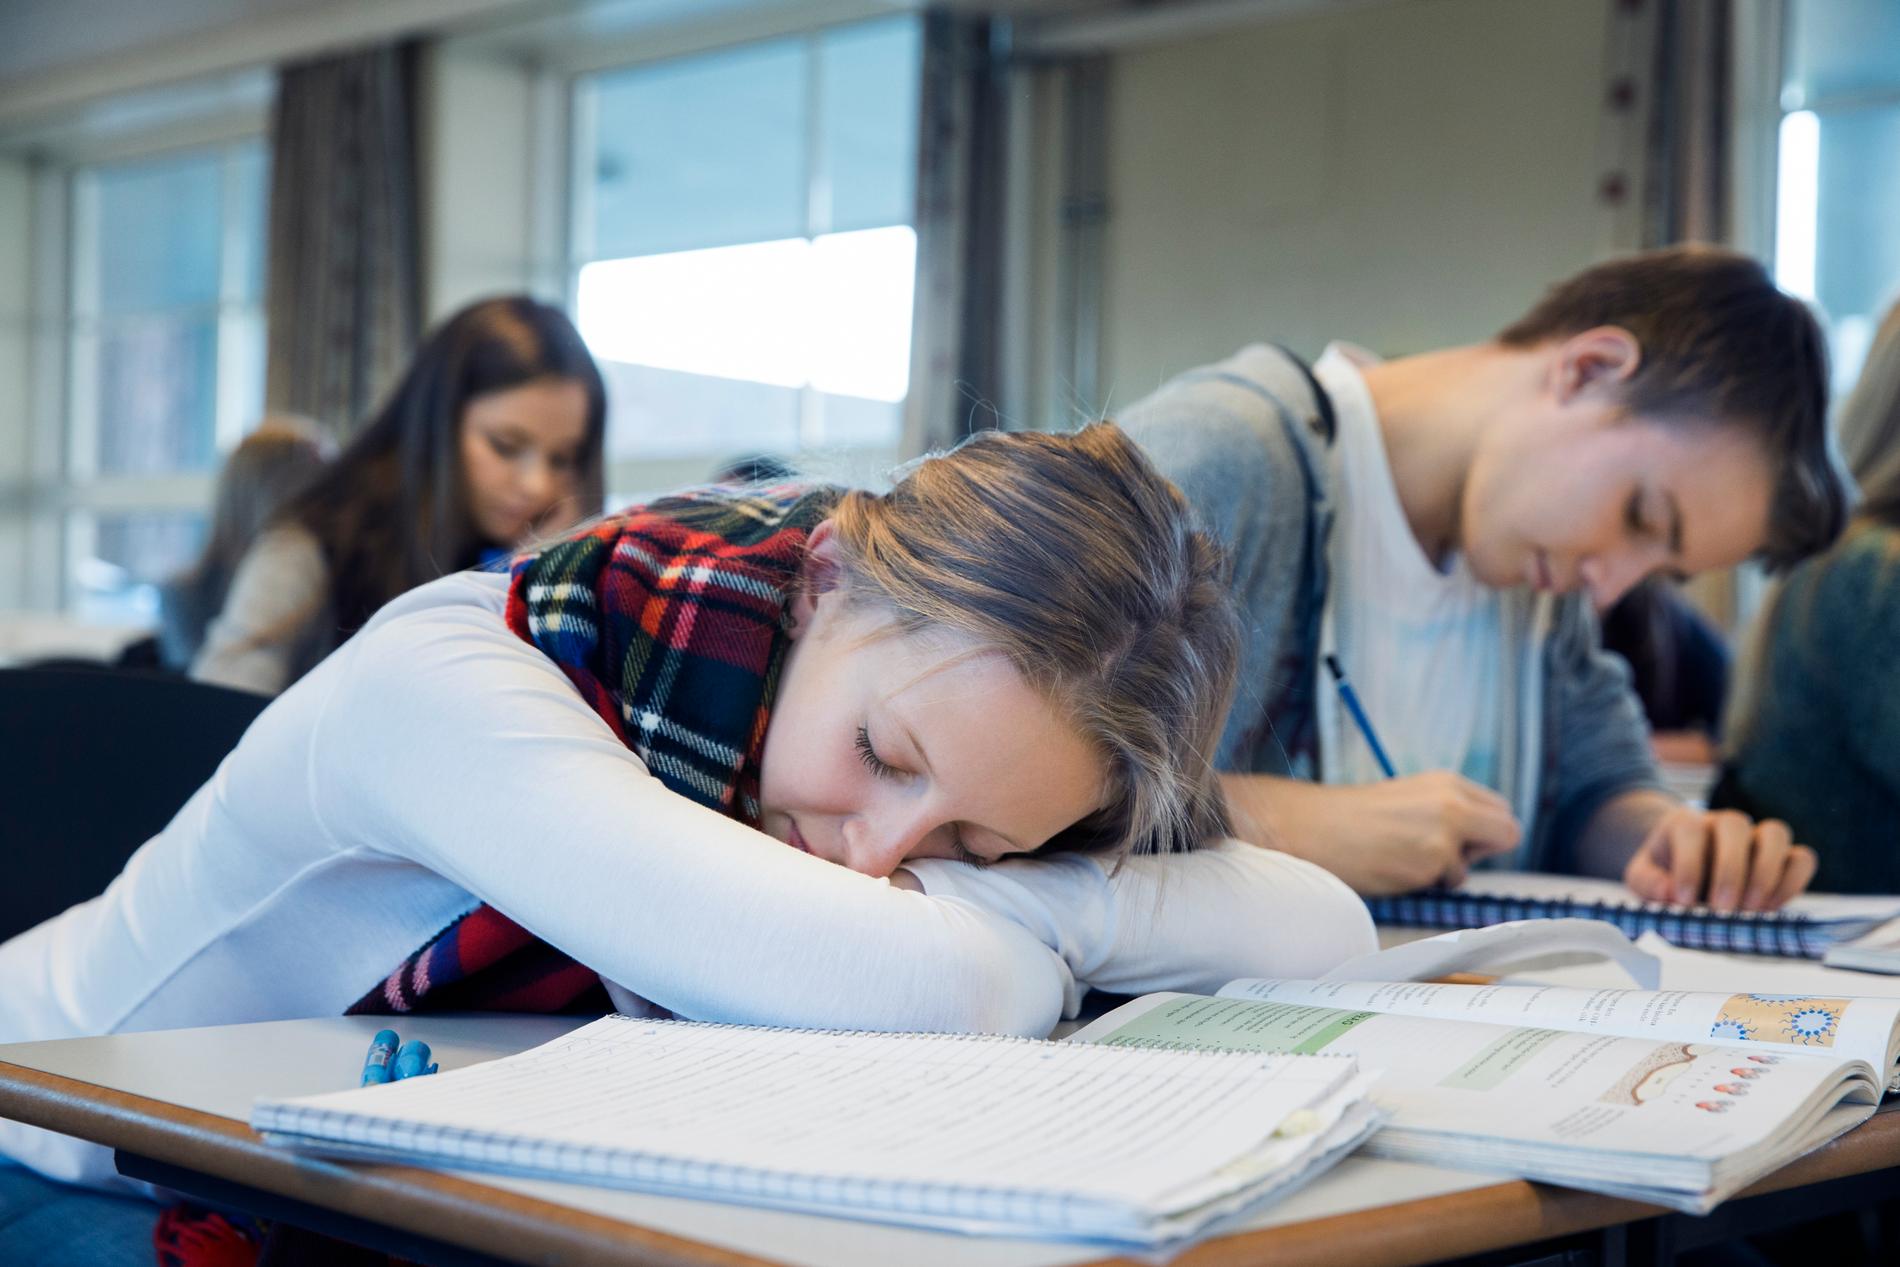 Försökspersoner i en sömnstudie tappade tio procent av inlärningen när de sovit en halv natt, jämfört med en hel natt. Personen på bilden har ingen koppling till artikeln. Arkivbild.